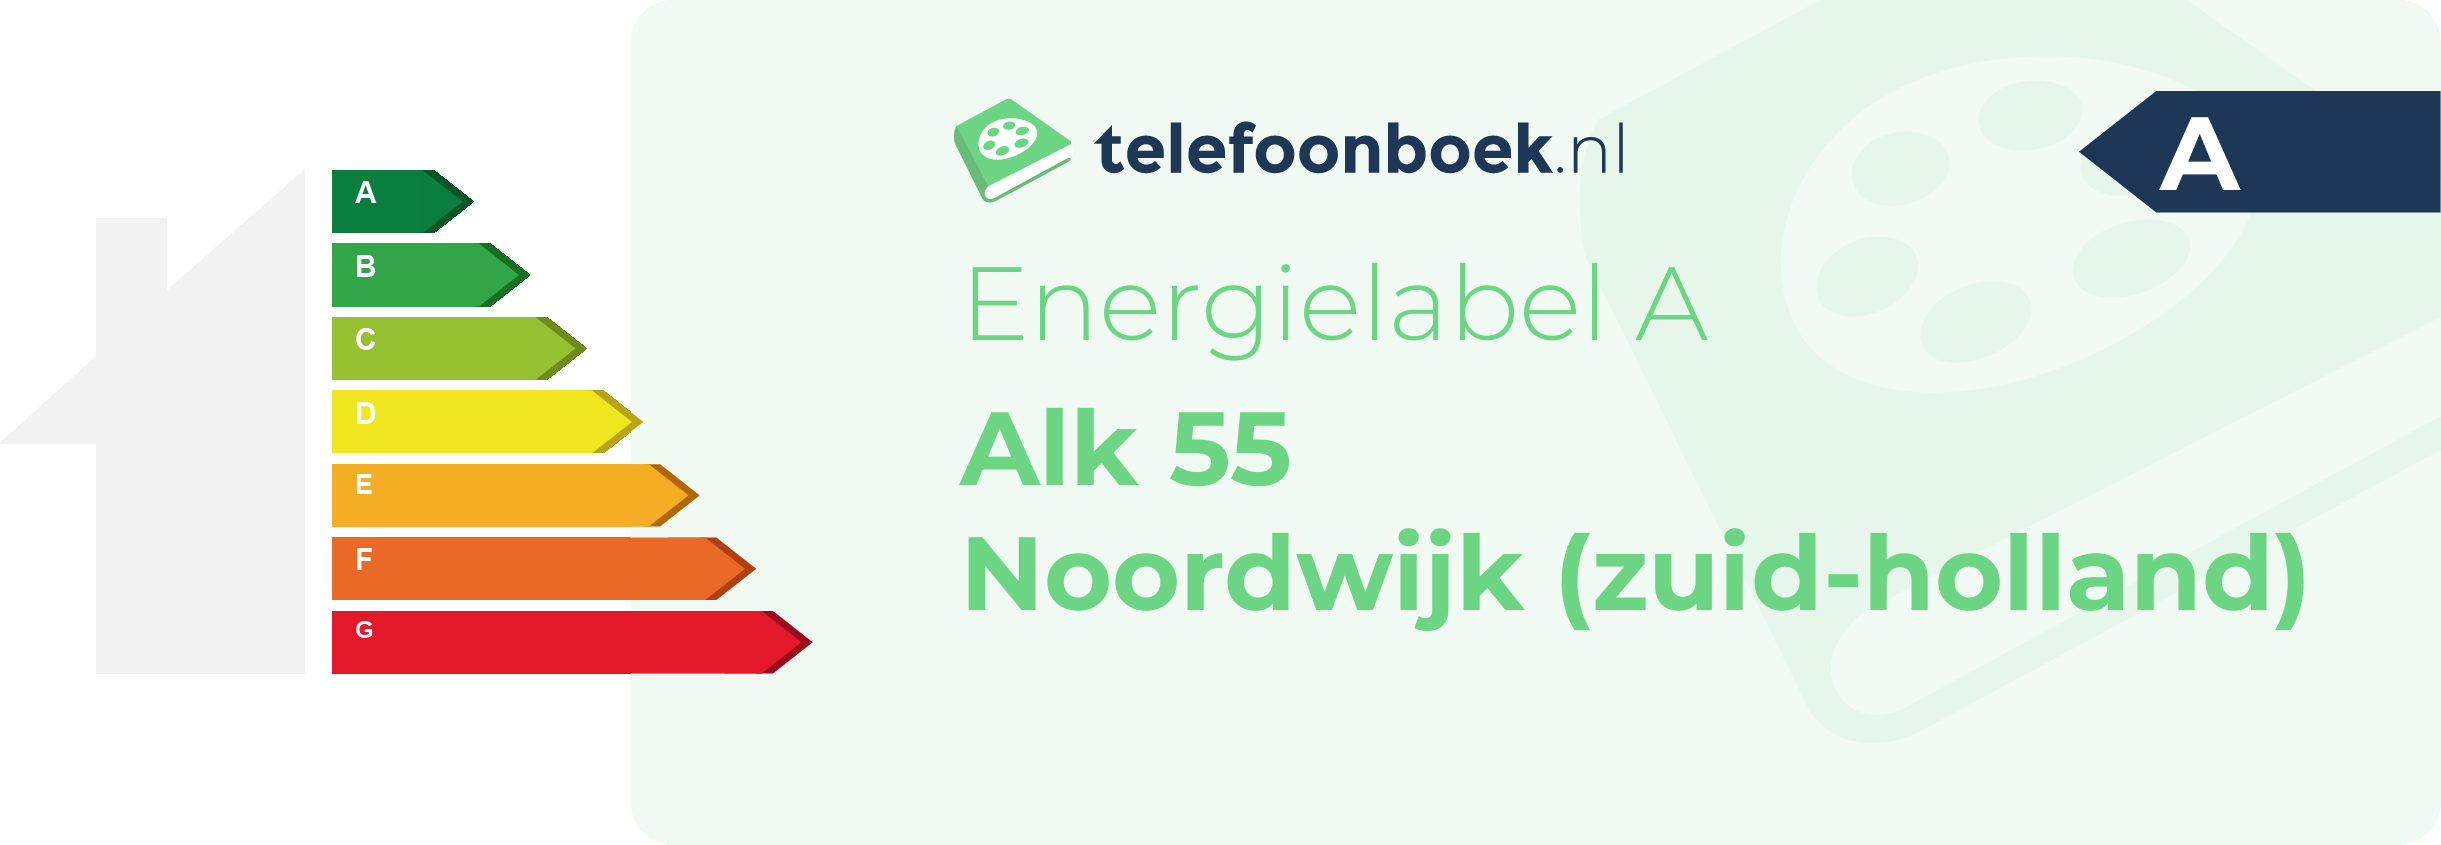 Energielabel Alk 55 Noordwijk (Zuid-Holland)